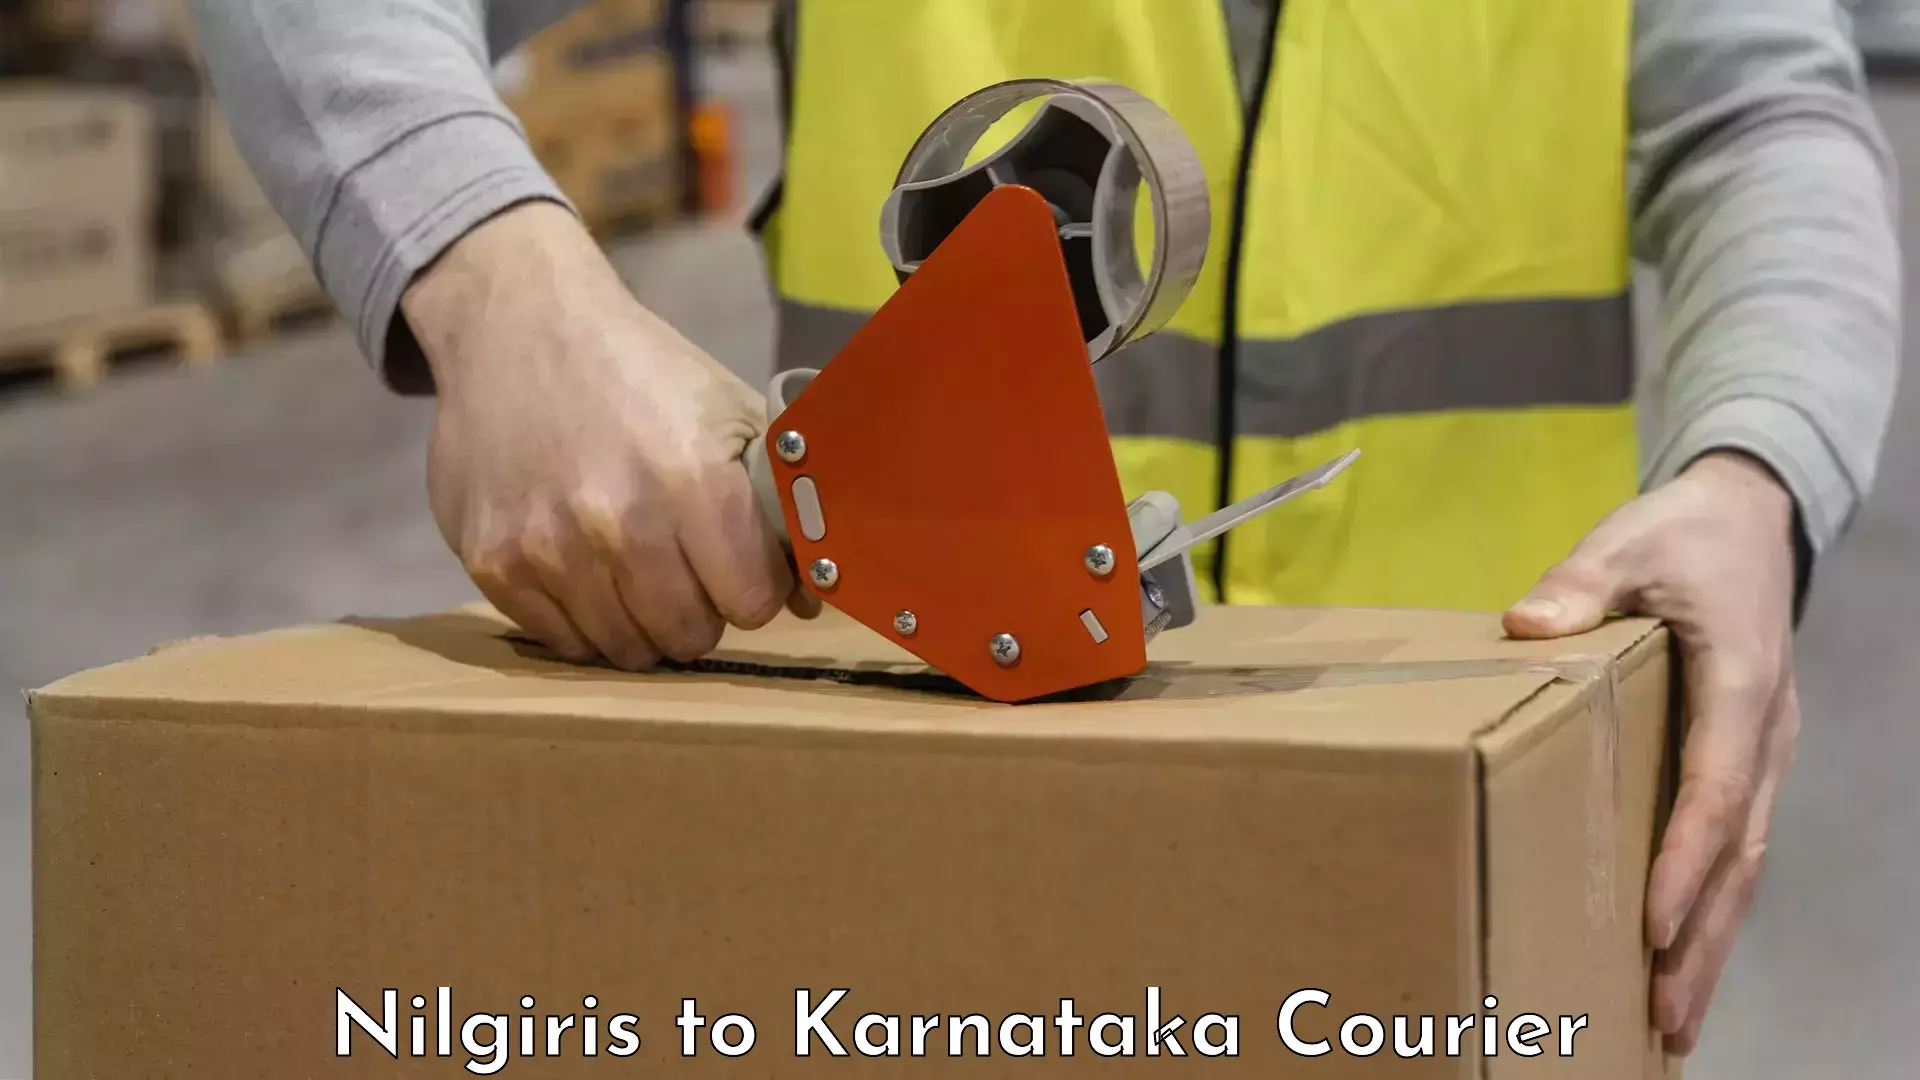 Baggage transport scheduler Nilgiris to Karnataka